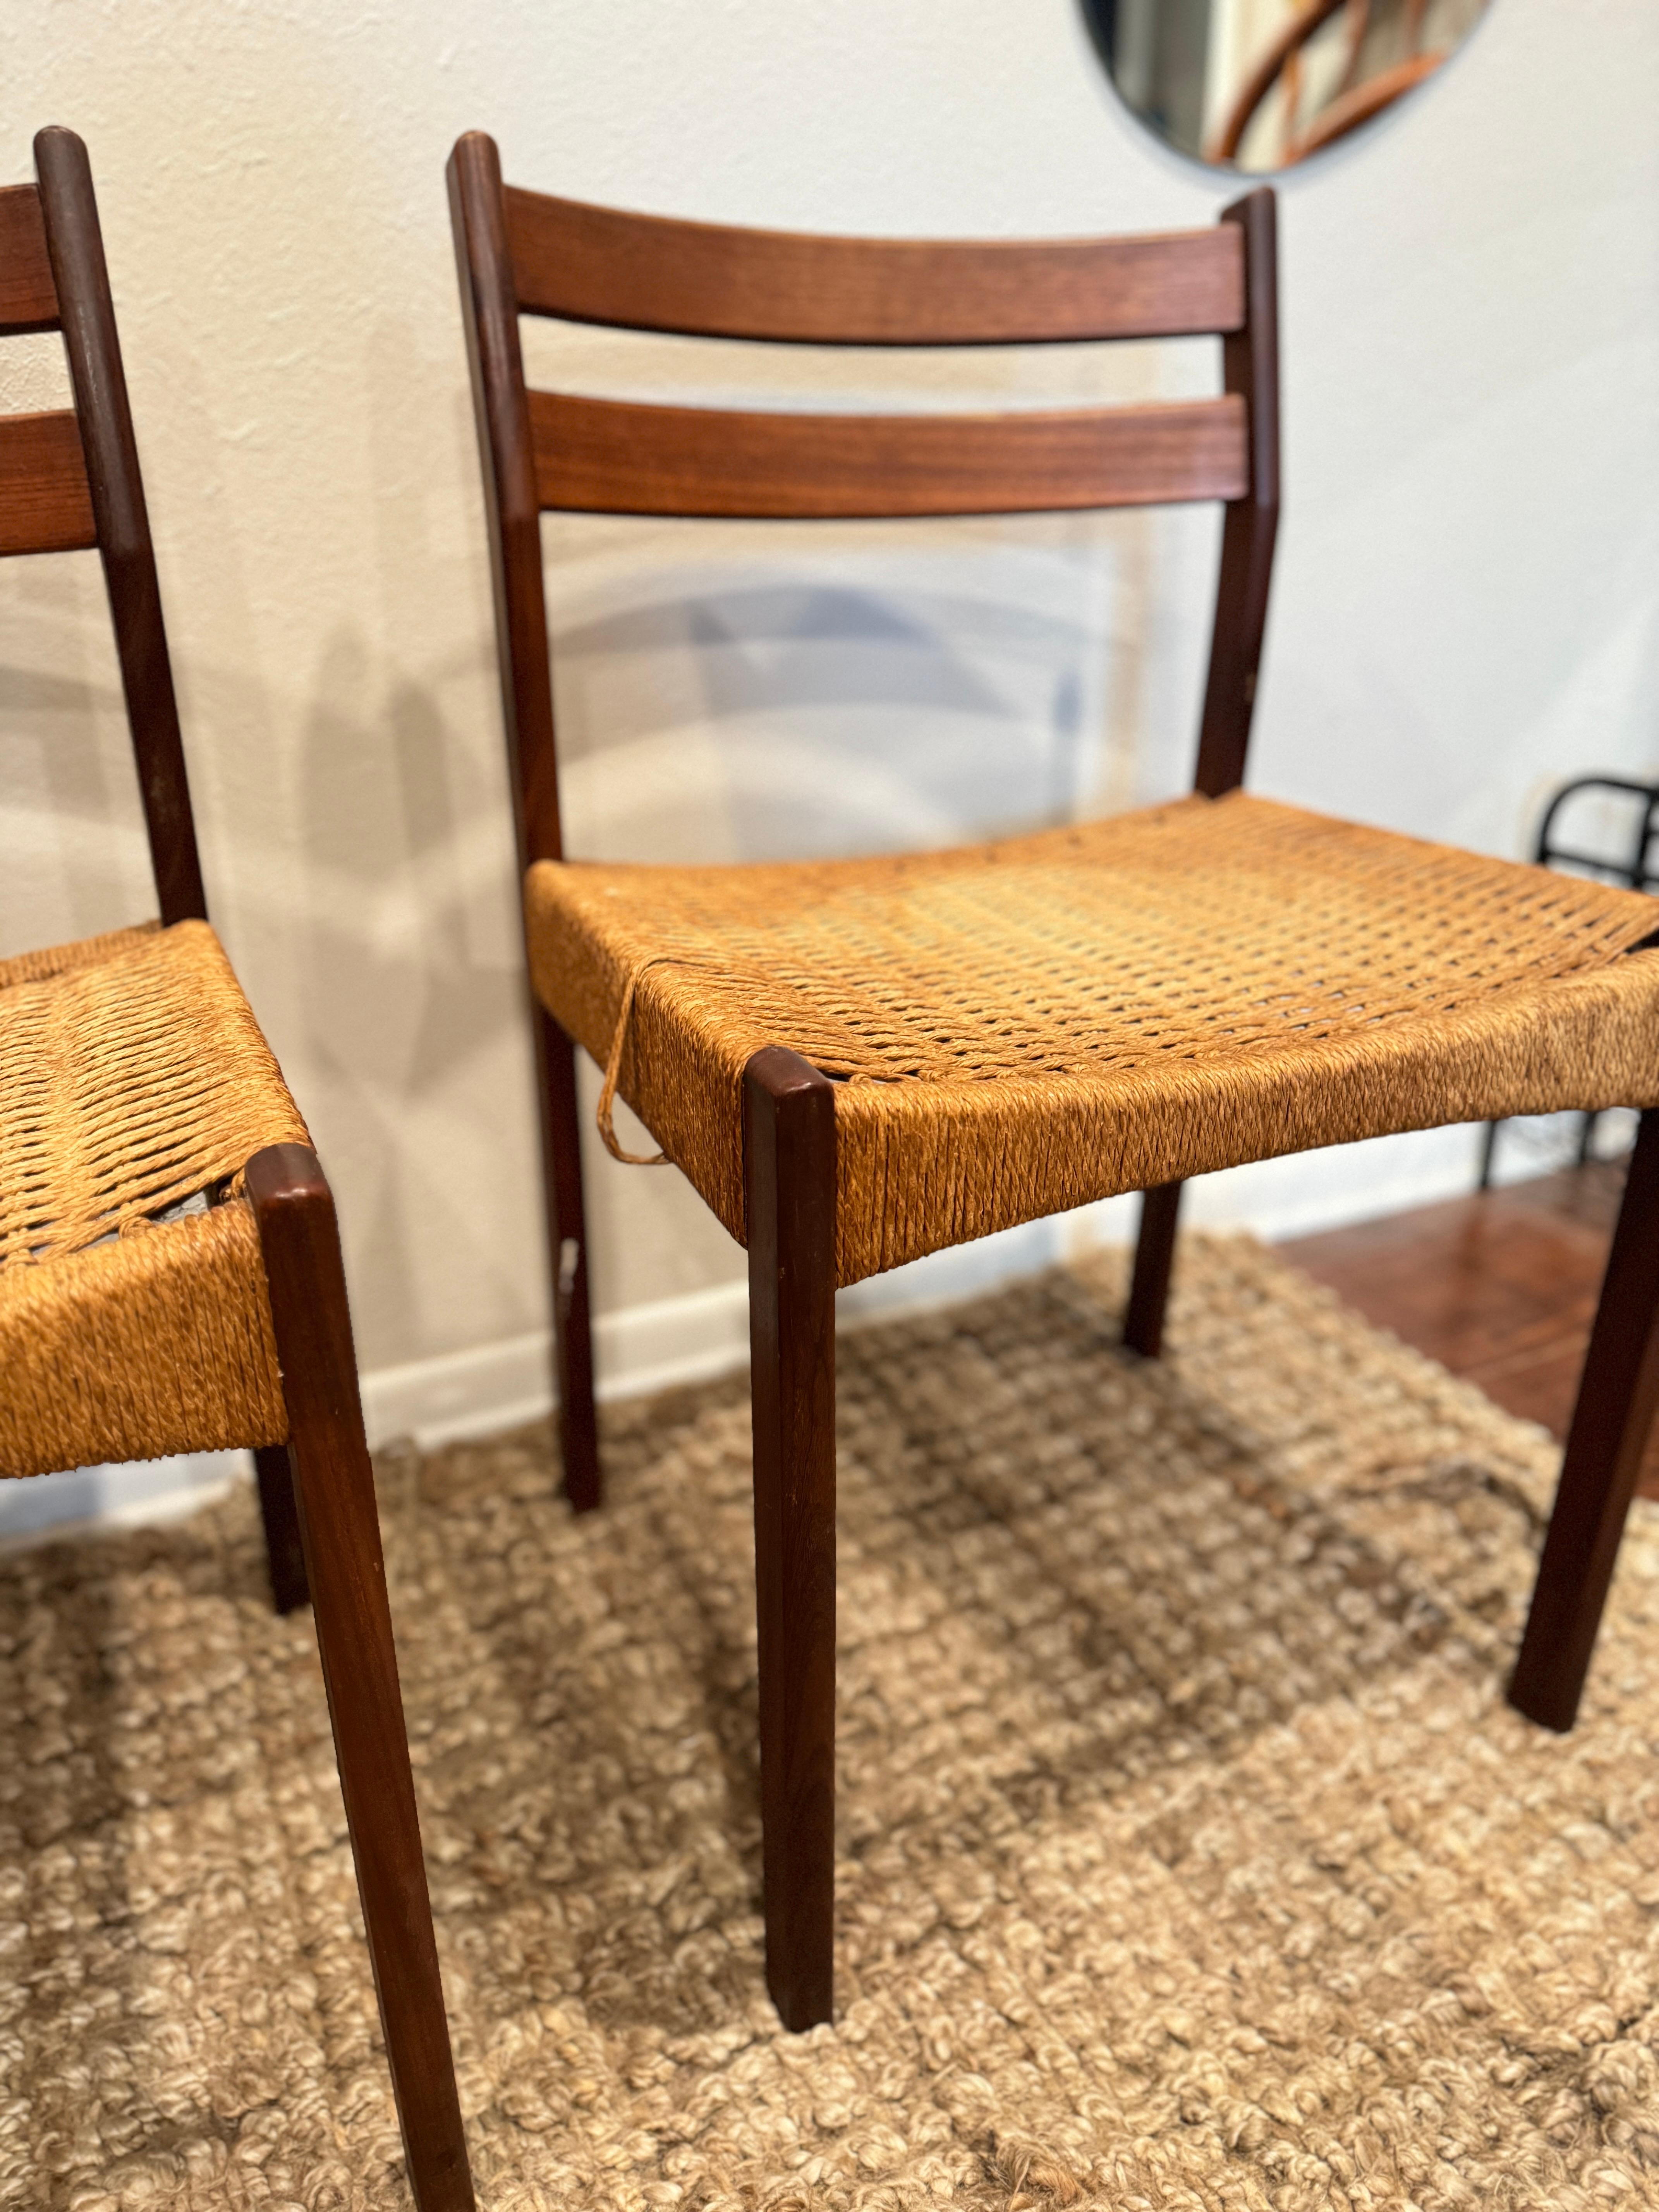 ein Satz von 4 Esszimmerstühlen, entworfen von Arne Hovmand Olsen, hergestellt von Mogens Kold, ca. 1950er Jahre. Die Stühle sind aus Teakholz gefertigt und haben eine originelle Sitzfläche aus Papierkordel. Sie sind strukturell solide, aber die